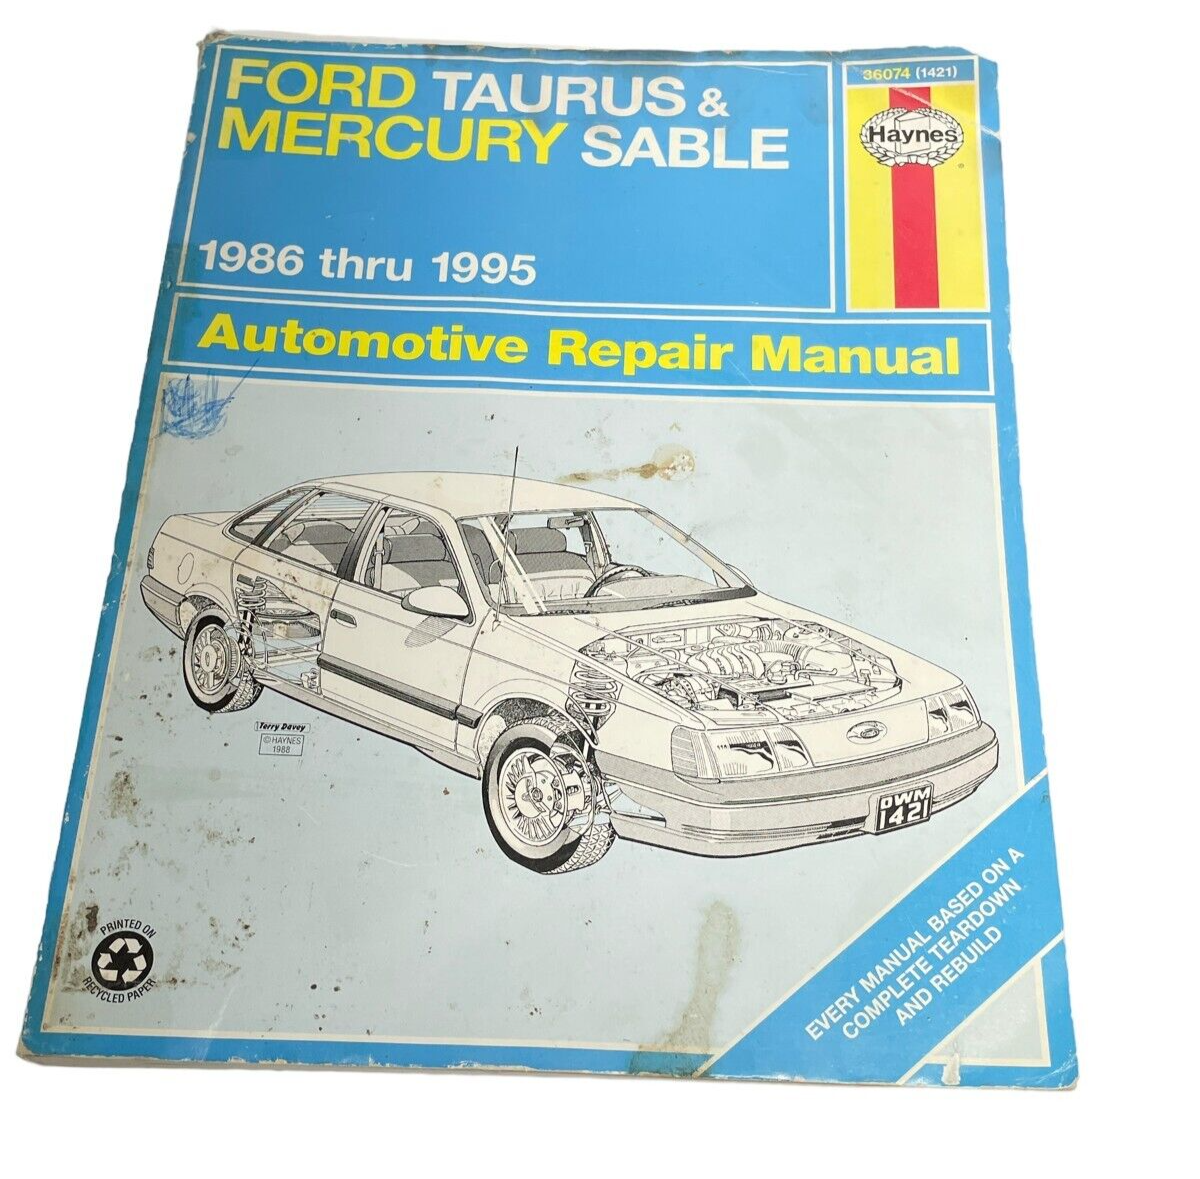 Primary image for Haynes Manual 1986-1995 Ford Taurus/Mercury Sable 36074 Repair Manual